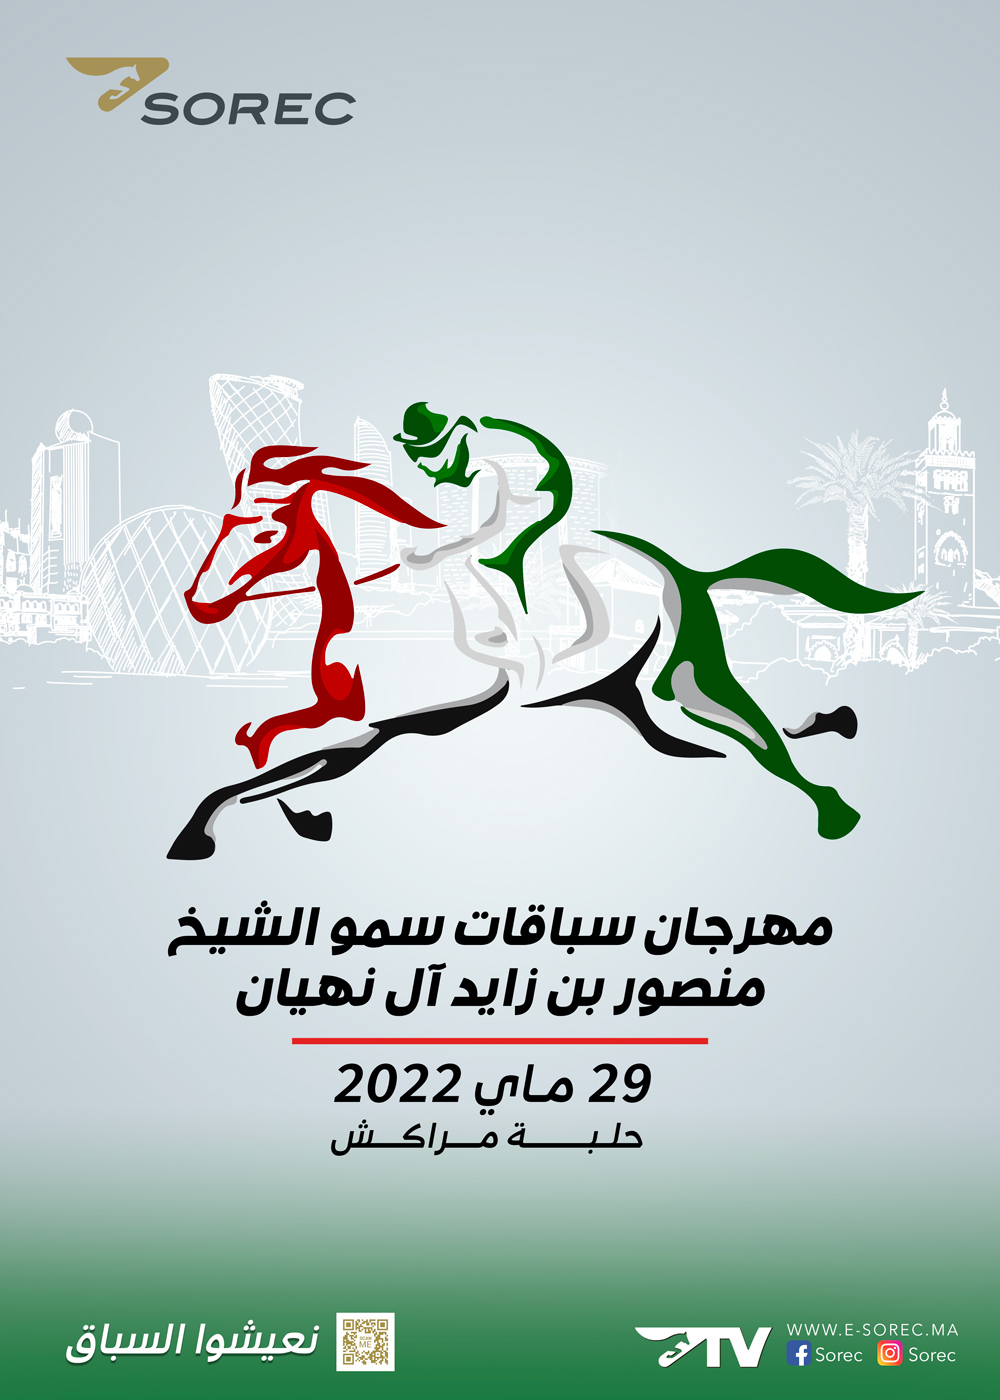 Marrakech accueille le Festival de Son Altesse Sheikh Mansoor Bin Zayed Al Nahyan des courses de chevaux Pur-sang Arabe